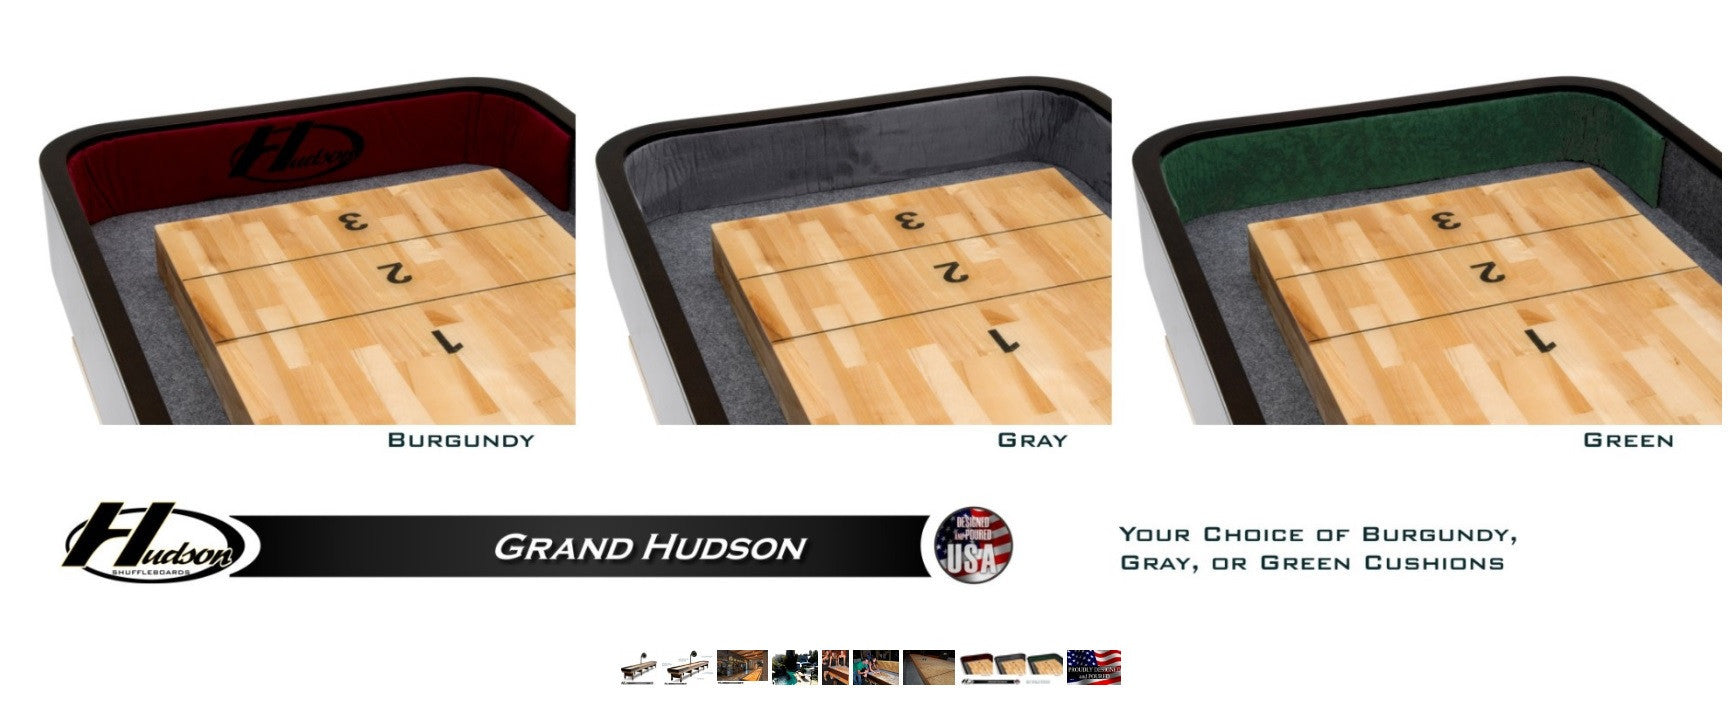 Hudson 18' Grand Hudson Shuffleboard